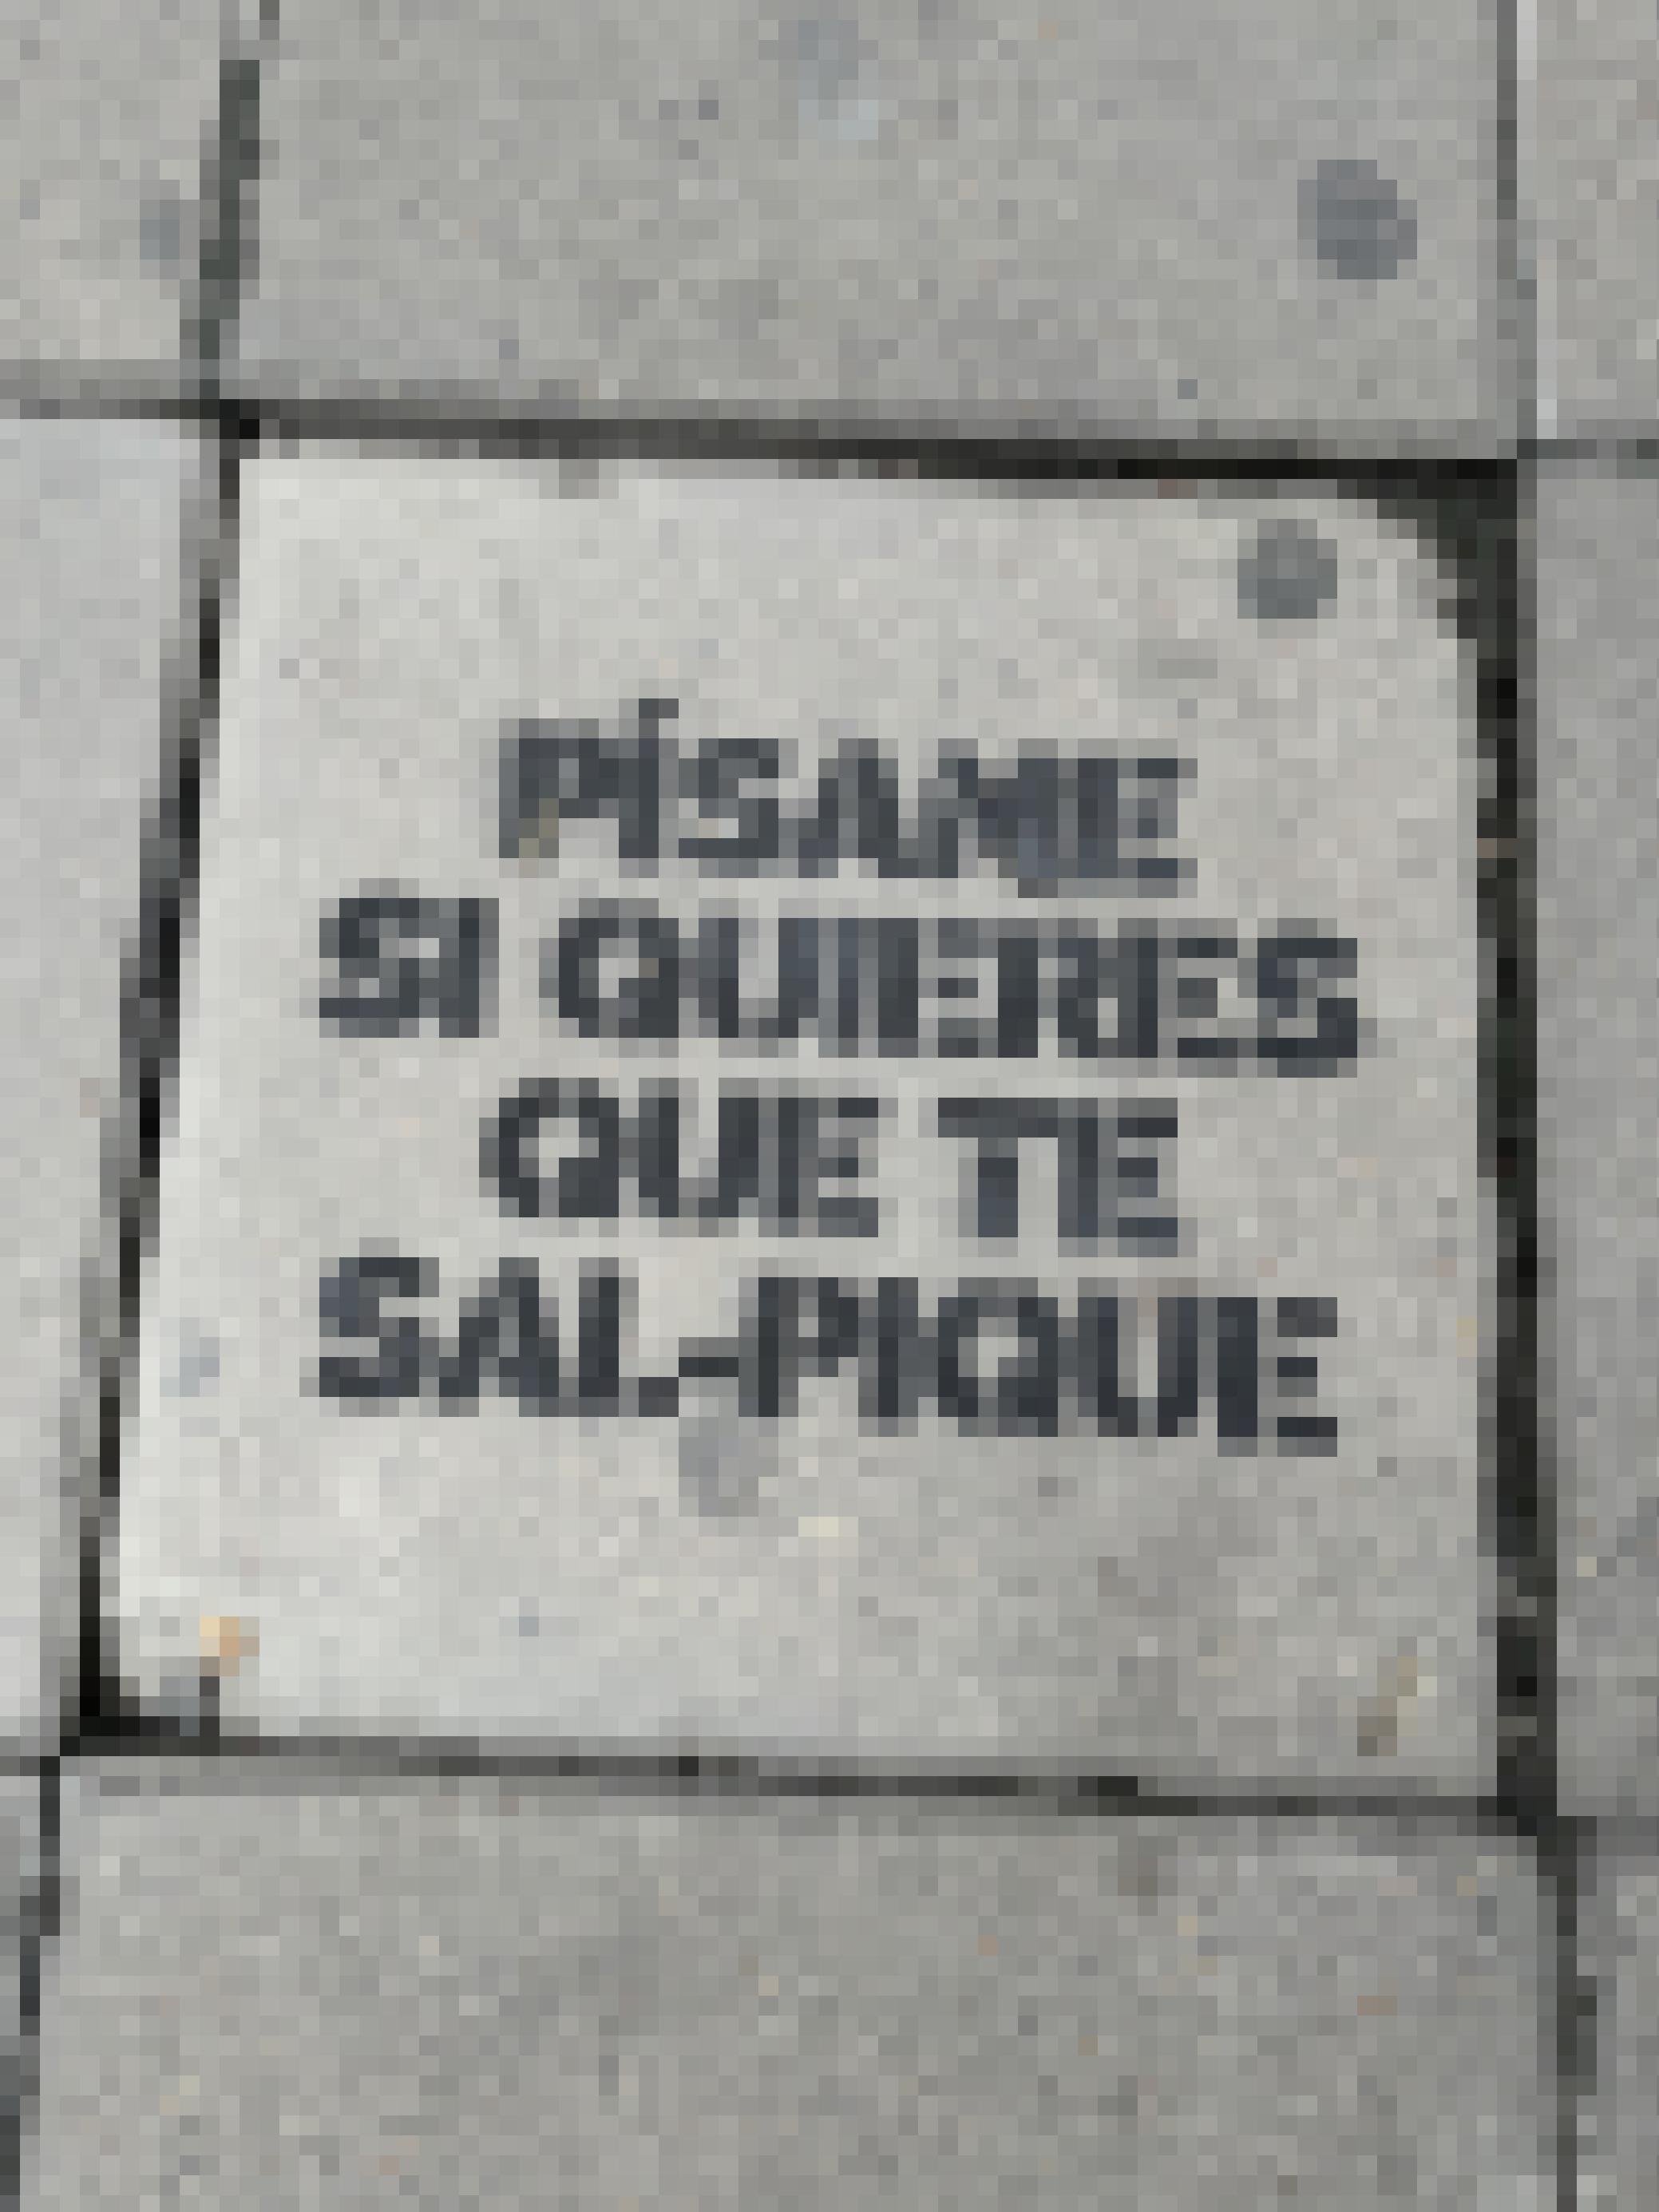 Auf einer an zwei Ecken abgebrochenen Bodenplatte steht der Spruch in Großbuchstaben gesprüht.